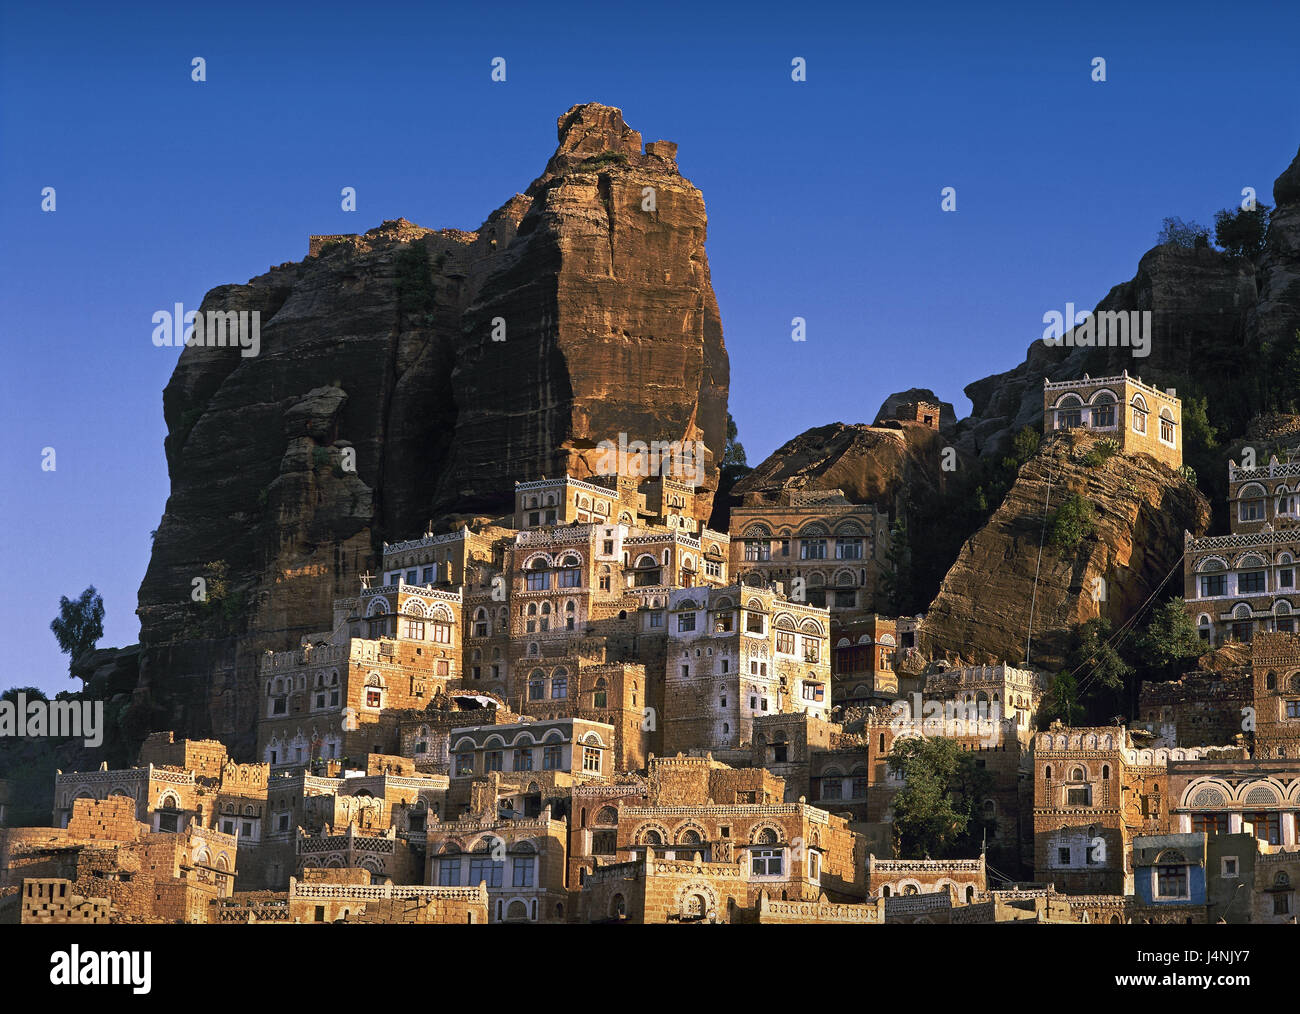 Yemen, de Hadda, rock, casas, el Cercano Oriente, lugar poblado de casas residenciales, tradicionalmente, el Yemen, Timor, arquitectura, históricamente, la construcción, la construcción mucky mucky, casas, montañas, Foto de stock